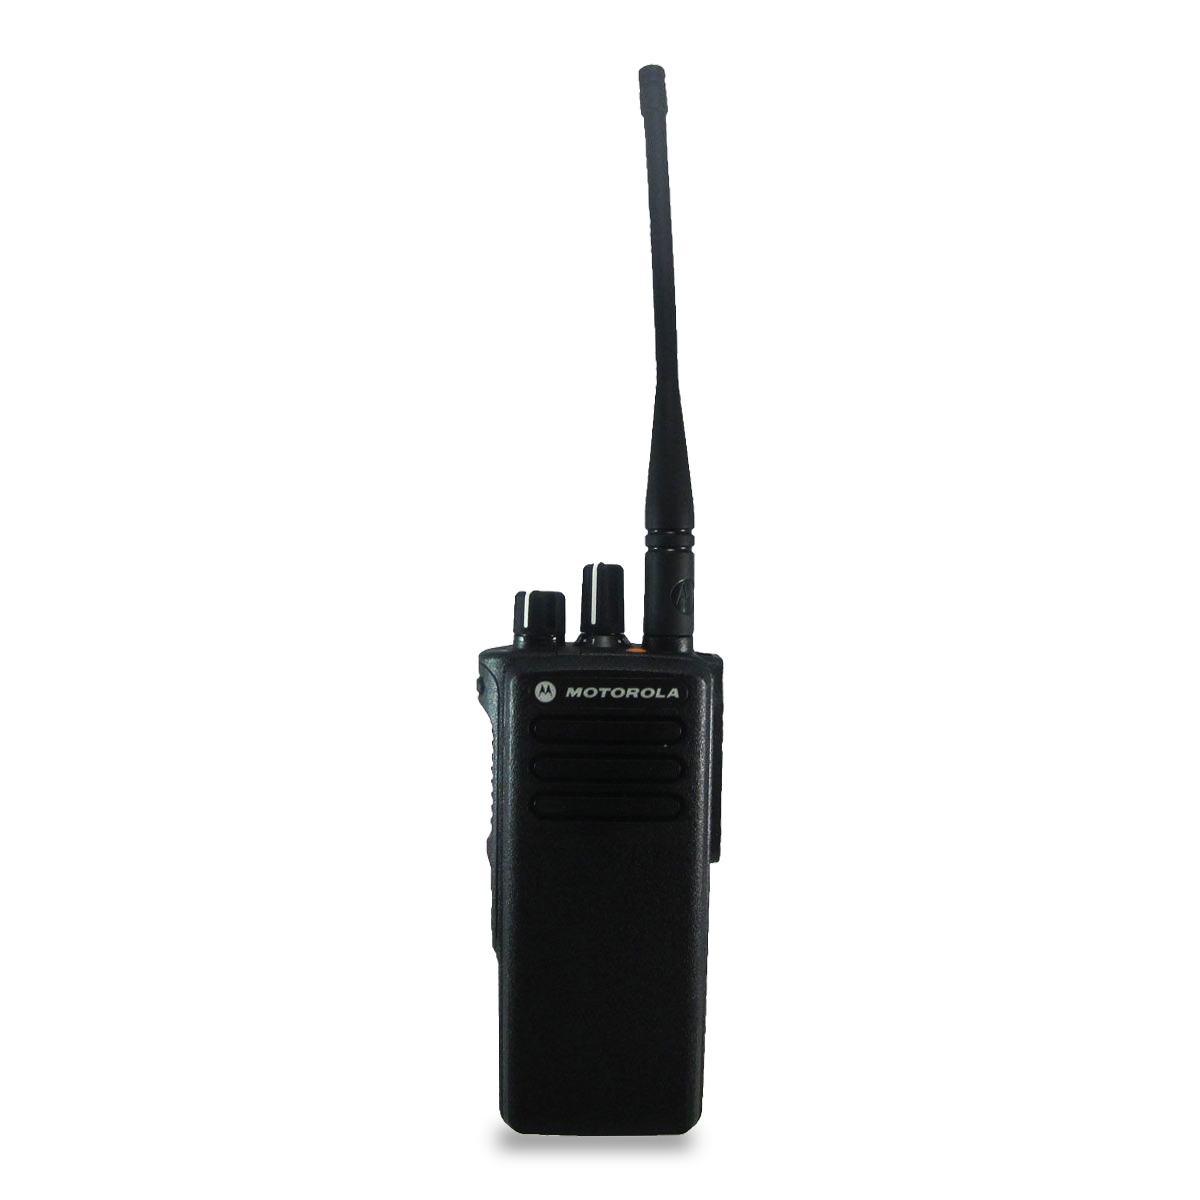 Radio Motorola DGP8050 Digital LAH56JDC9KA1AN VHF 136-174 MHz